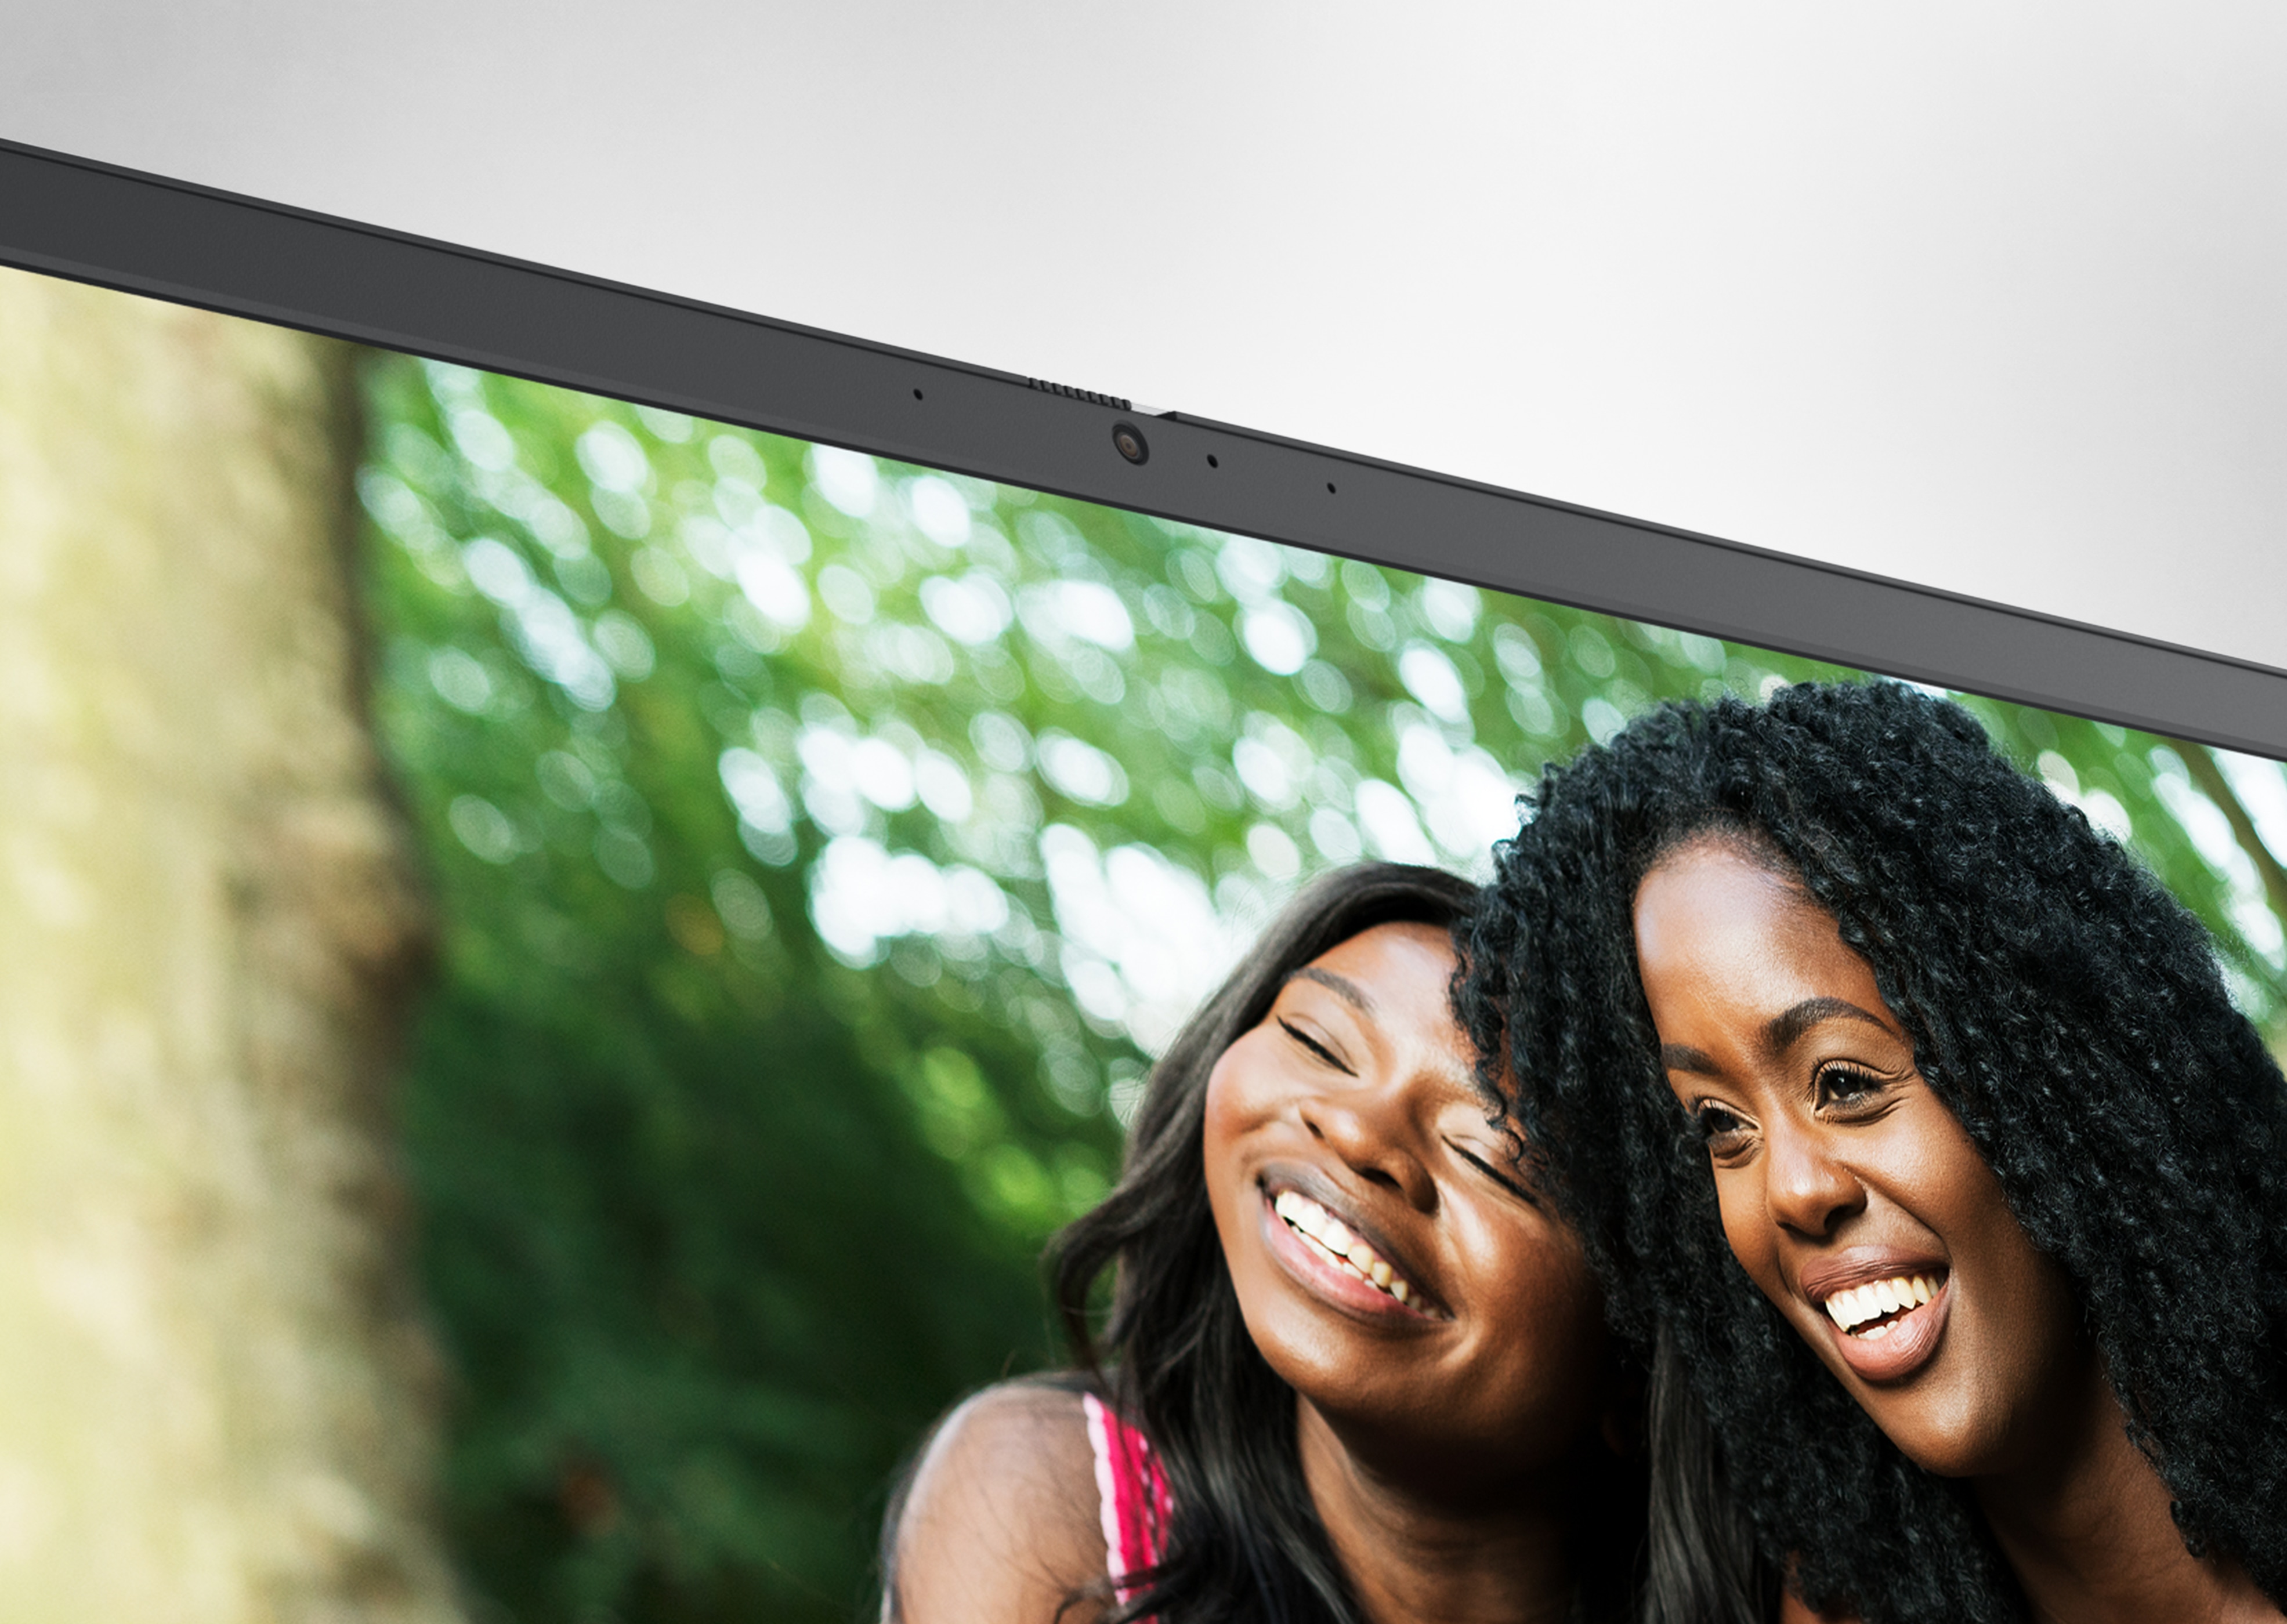 Bild eines Bildschirms von einem Dell Laptop des Typs Inspiron 15 3525 mit zwei lächelnden Frauen dicht nebeneinander.